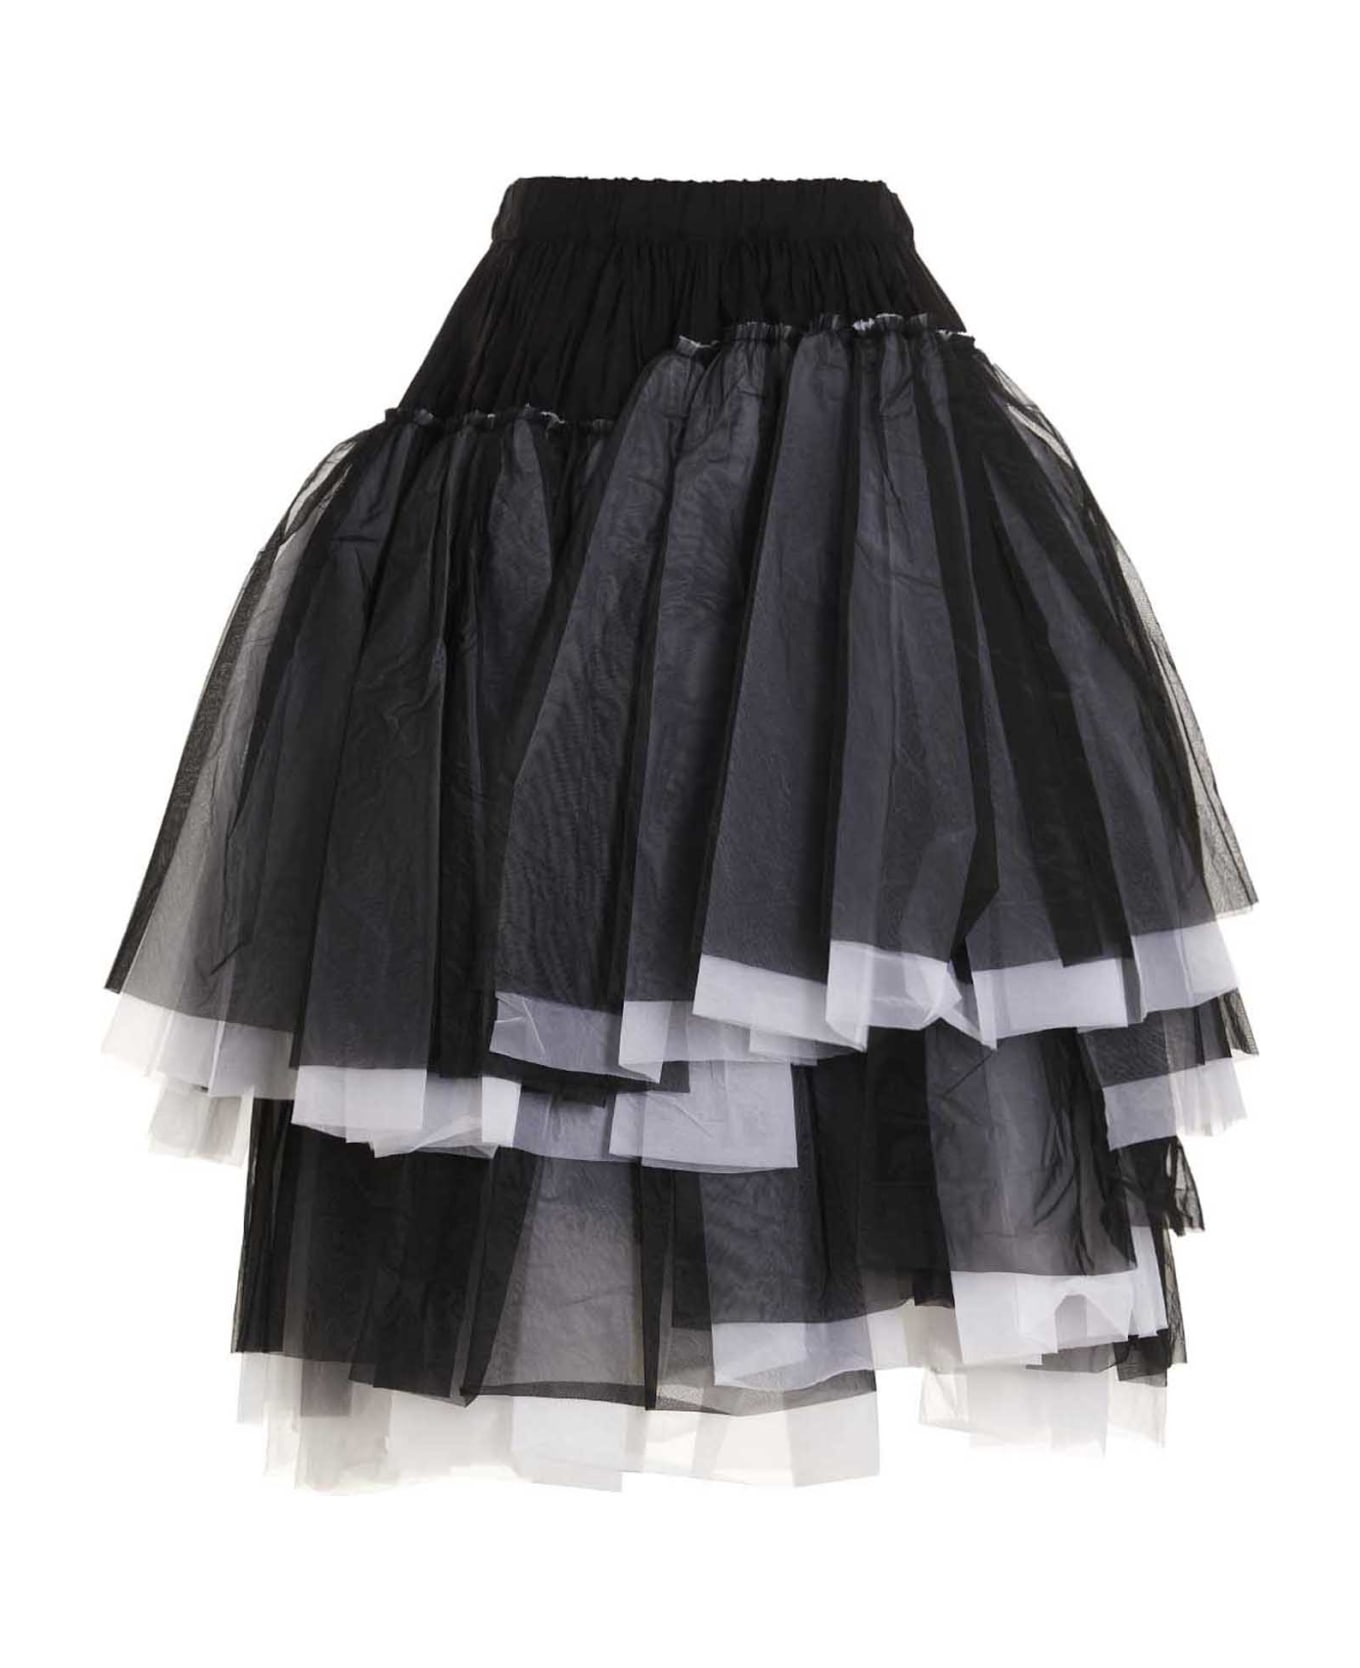 Comme des Garçons Flounced Tulle Skirt - White/Black